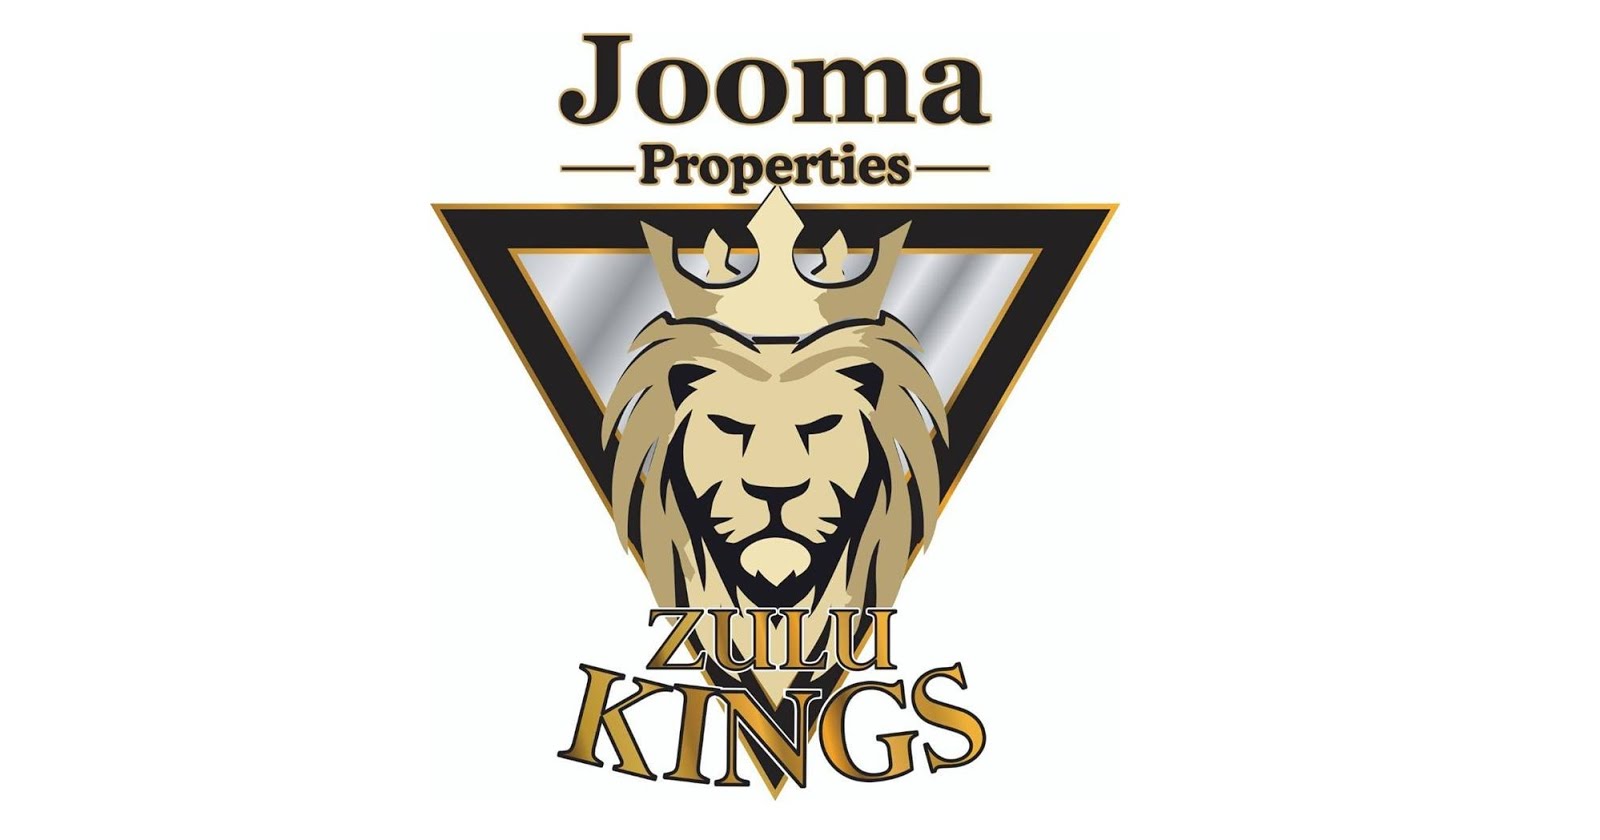 Jooma Properties Zulu Kings - Logo